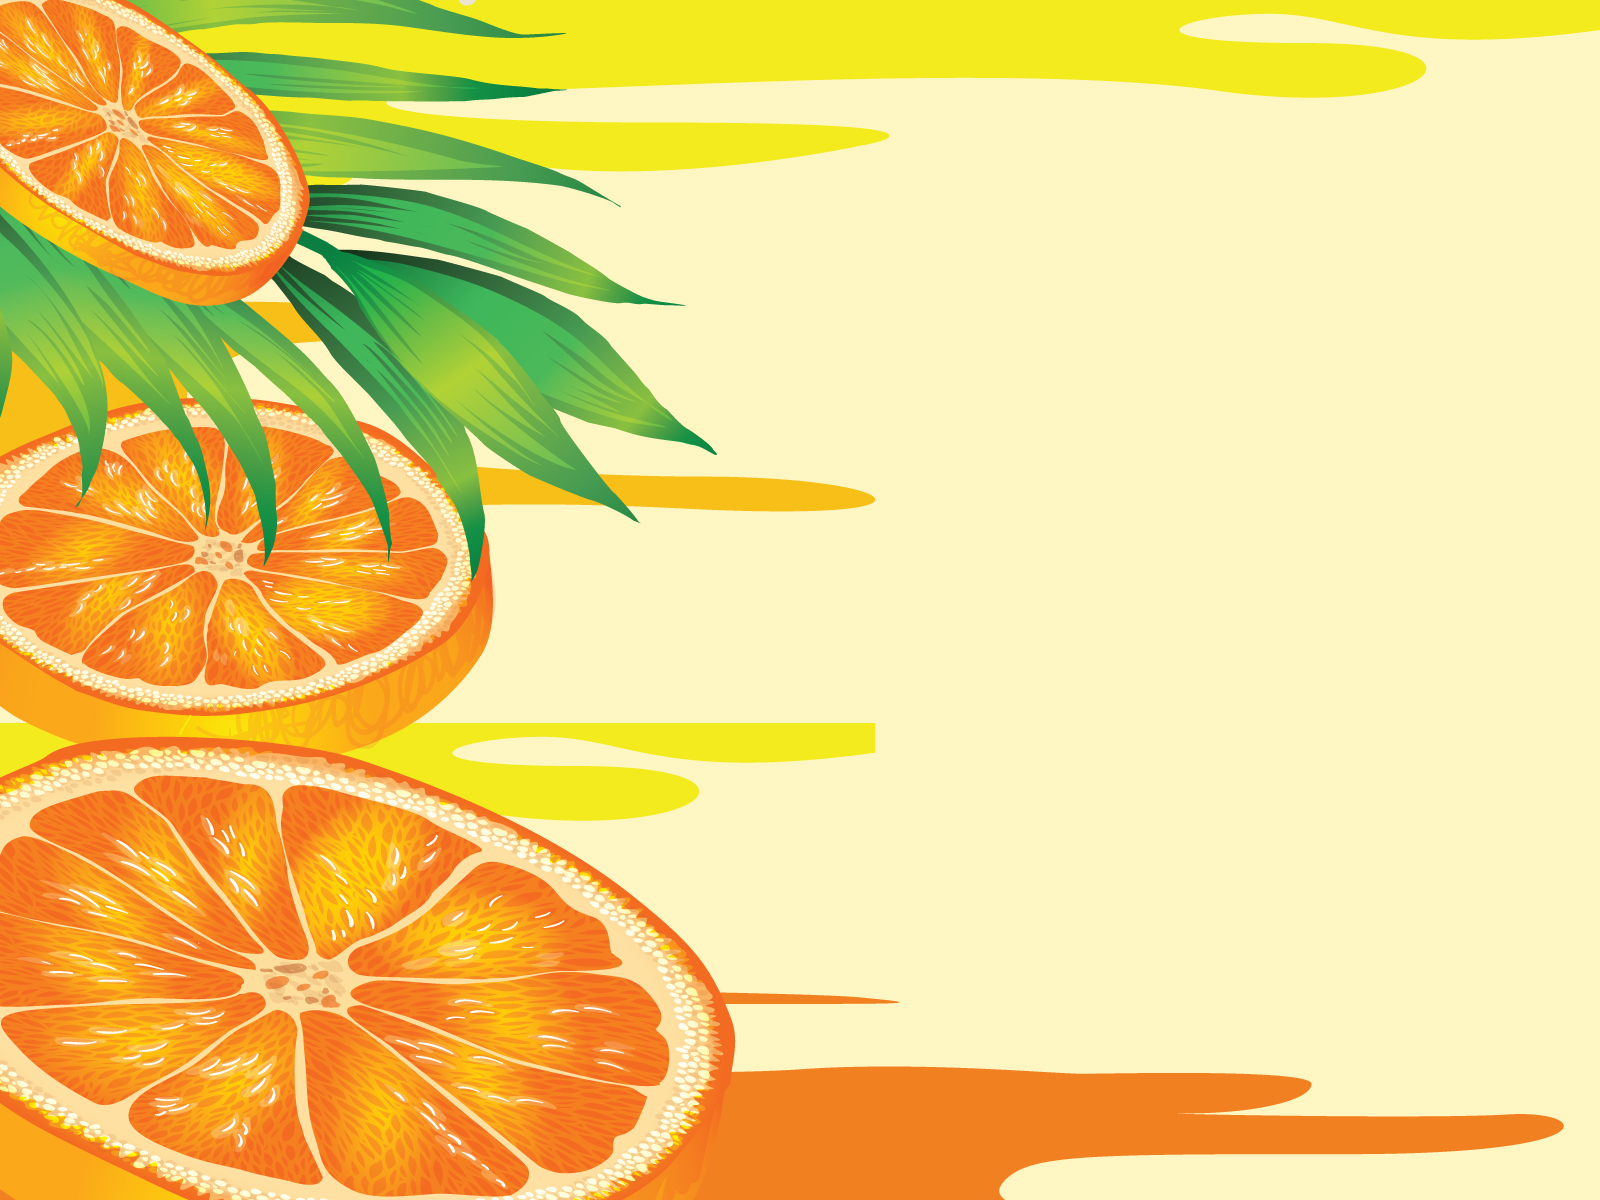 Фон для открытки апельсины